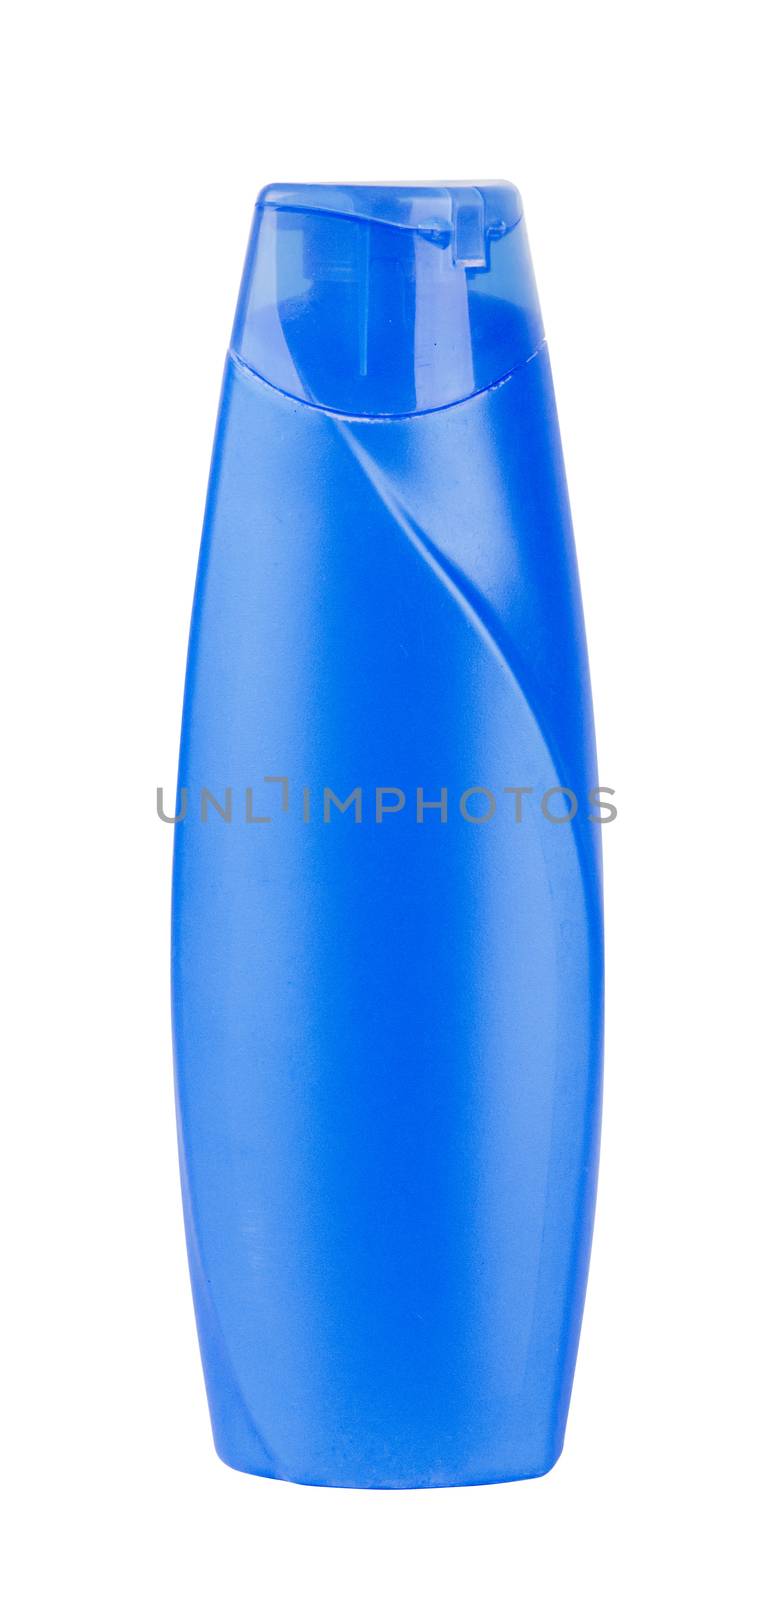 blue plastic bottle by ozaiachin